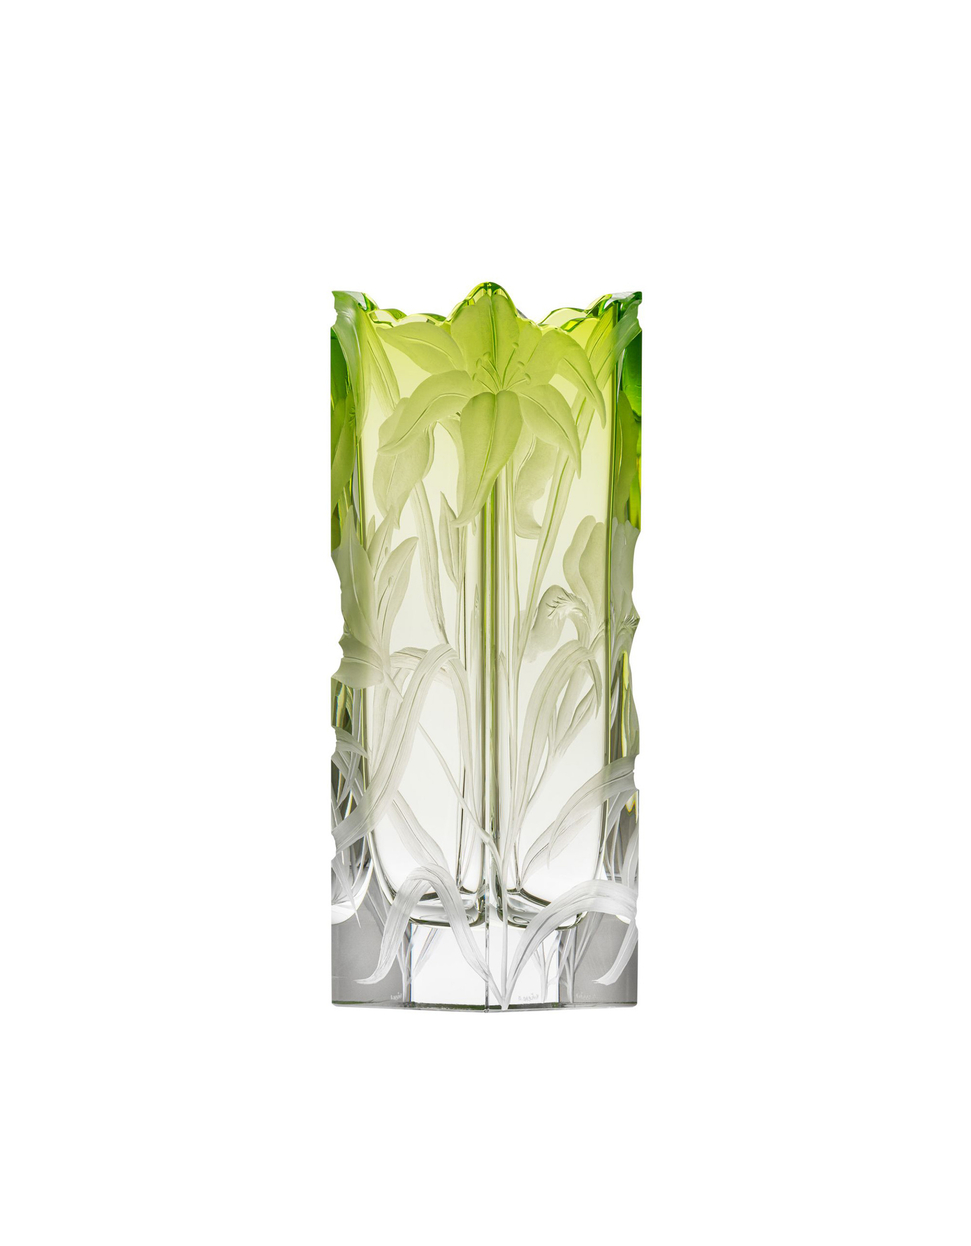 Irises vase, 30 cm